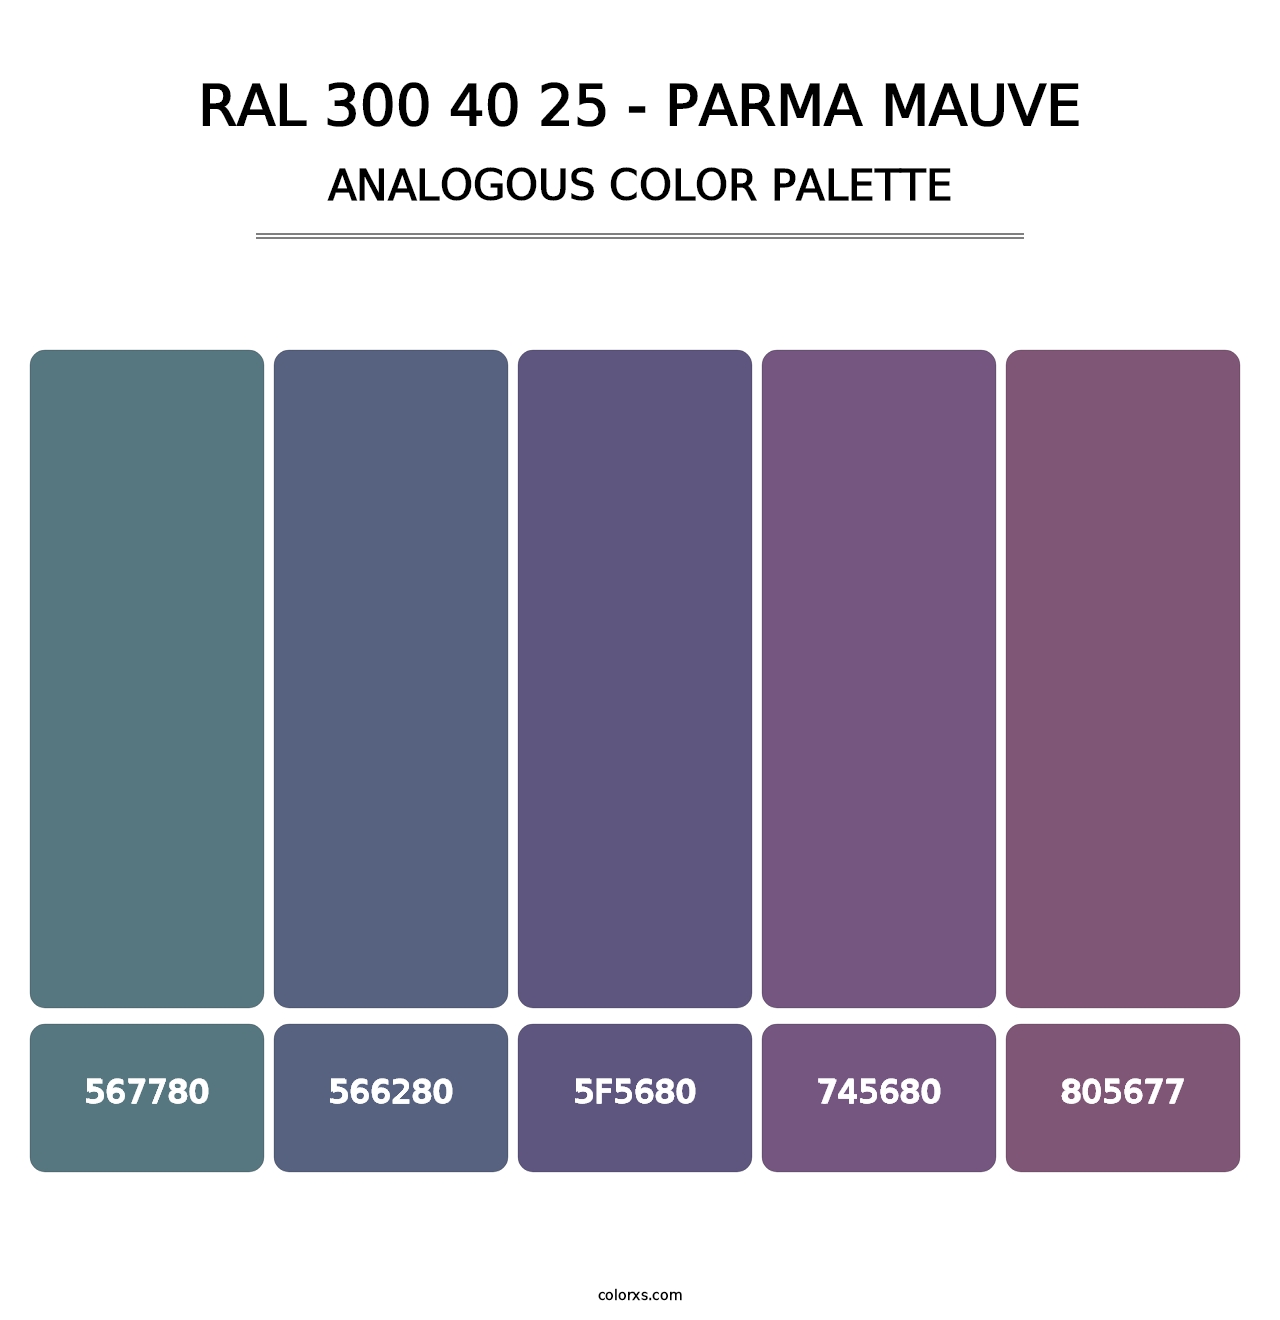 RAL 300 40 25 - Parma Mauve - Analogous Color Palette